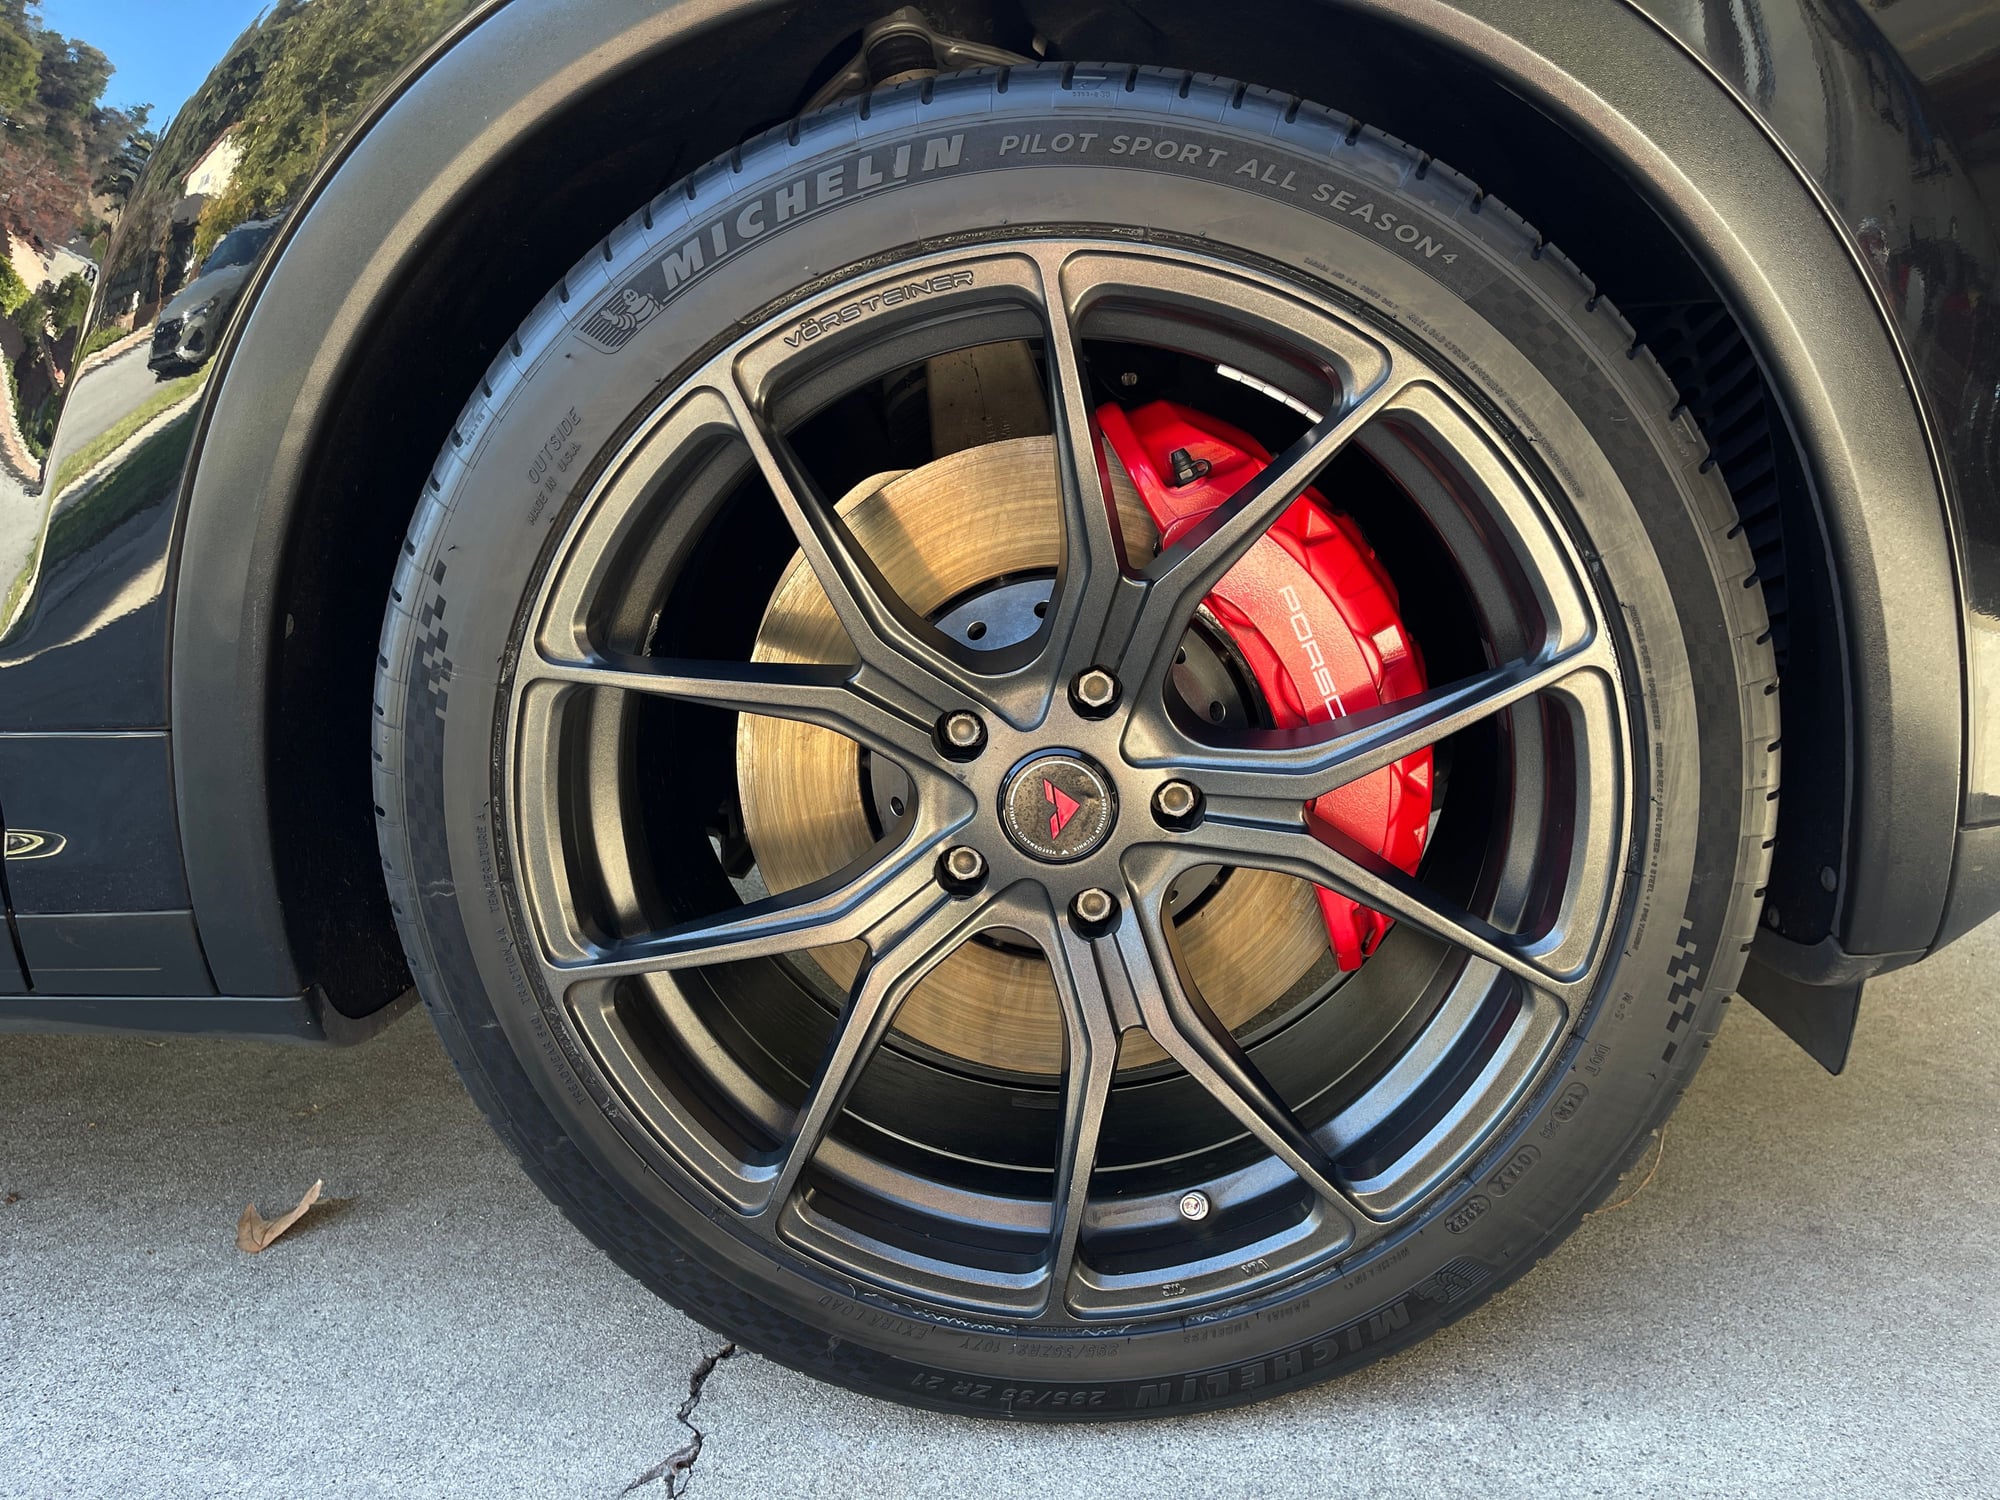 35 vs 40 sidewall tires & ride comfort - Rennlist - Porsche